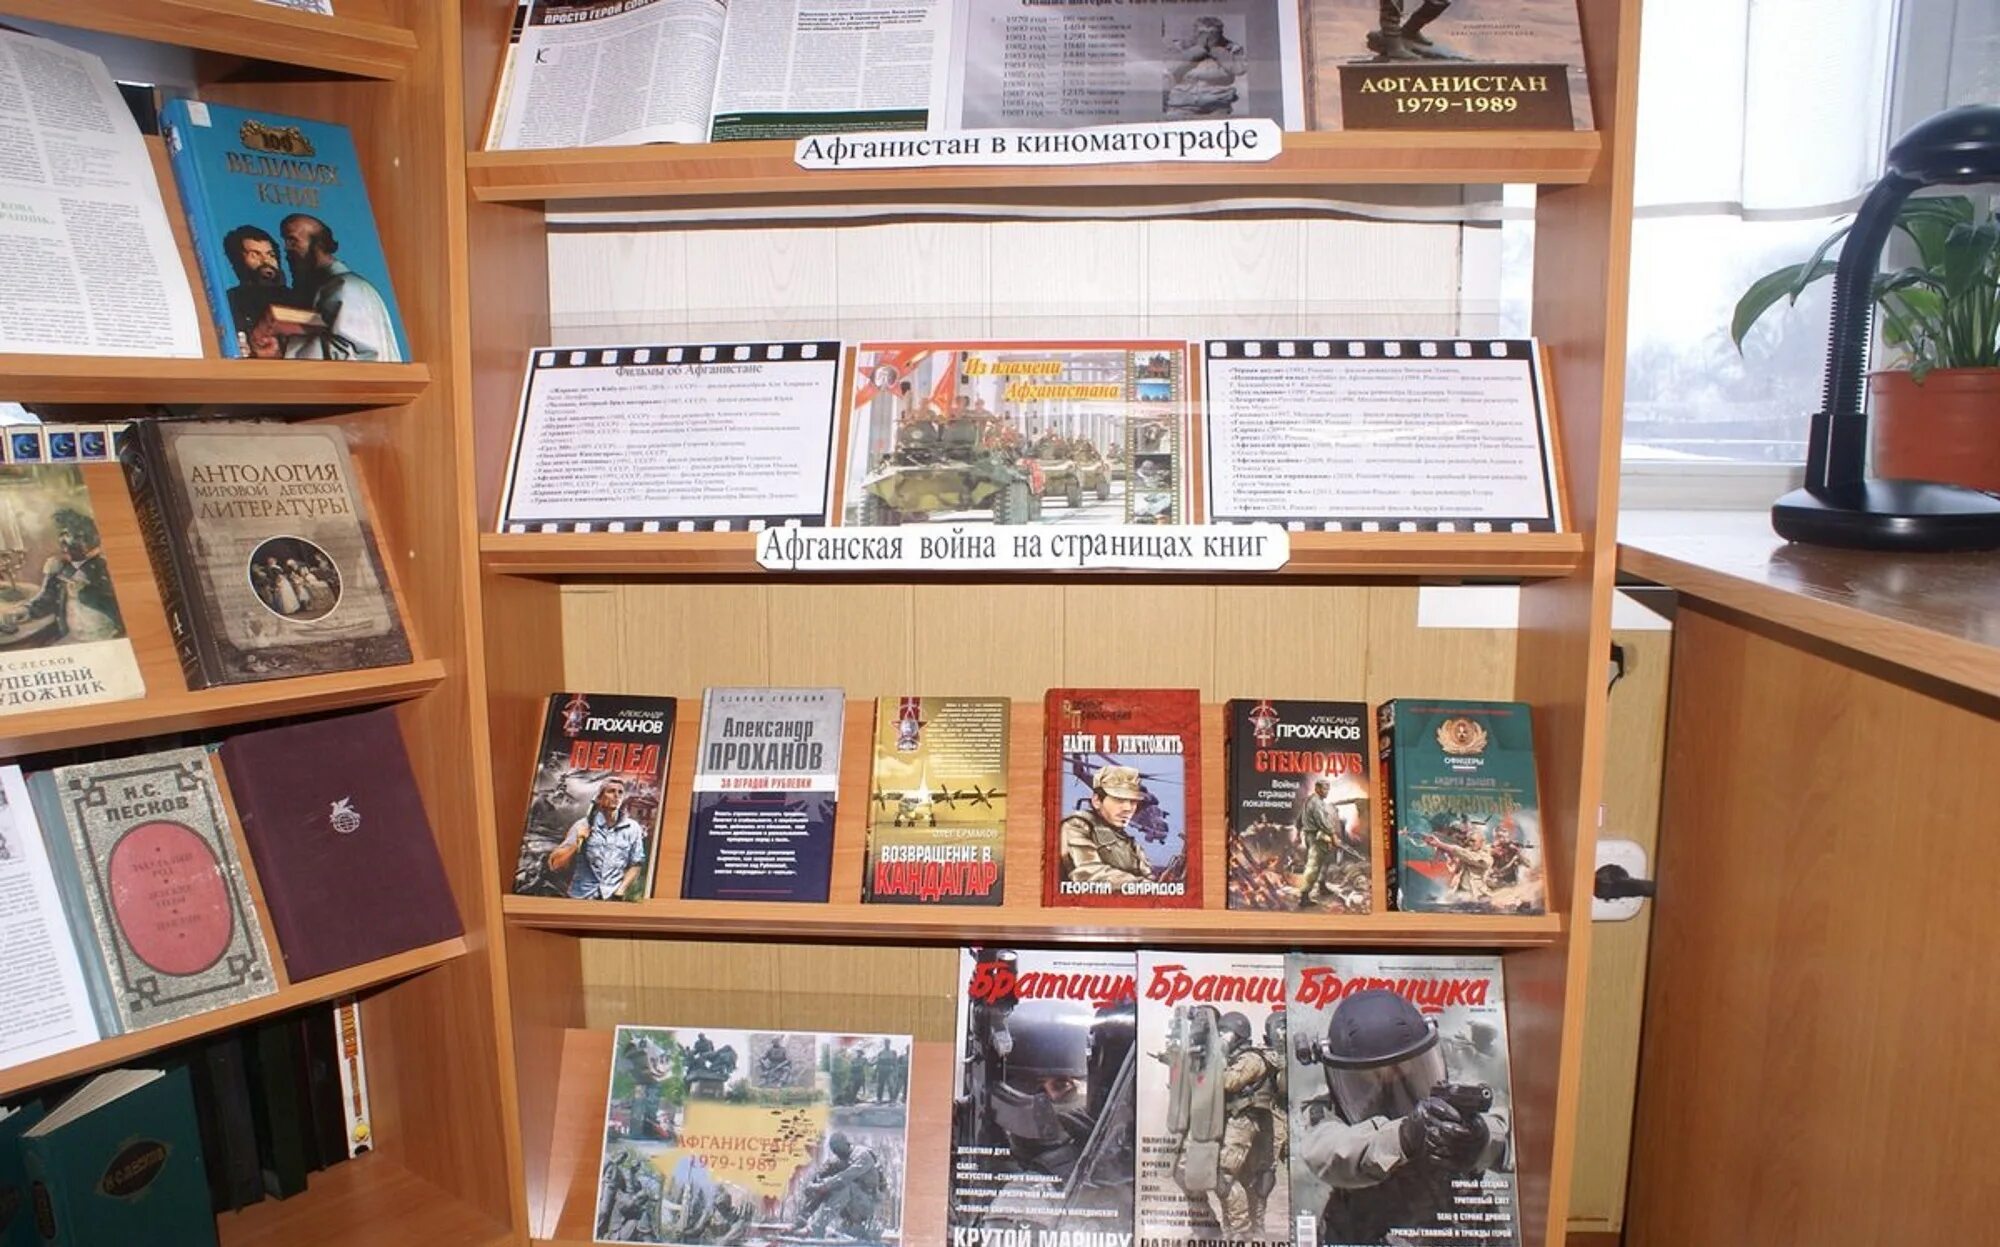 Афганистан выставка в библиотеке. Книжная выставка Афганистан в библиотеке. Выставка к Афгану в библиотеке. Мероприятие по Афгану в библиотеке. Мероприятия афганистан в школе